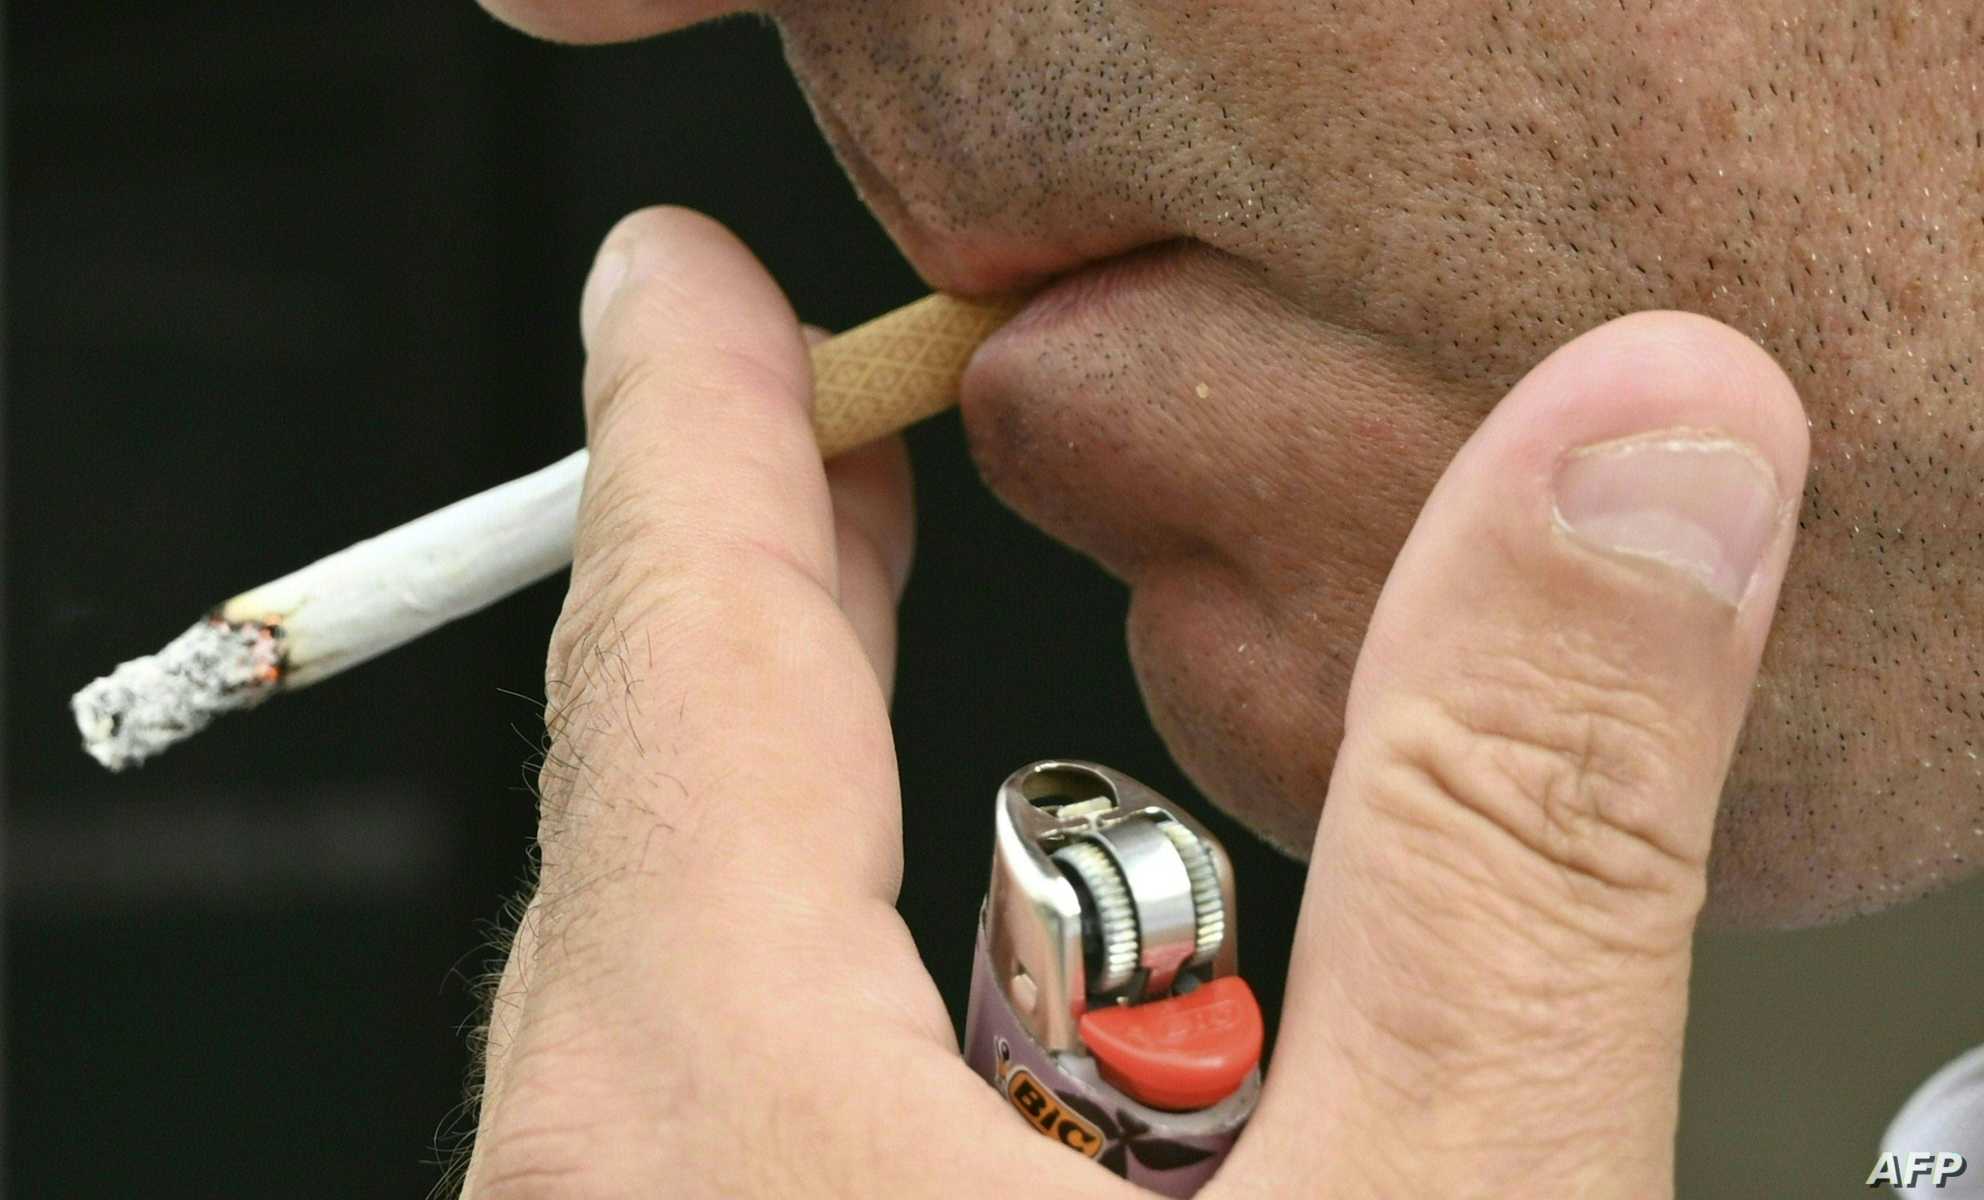   الصحة العالمية تعلن انخفاض تعاطي التبغ بسبب كورونا